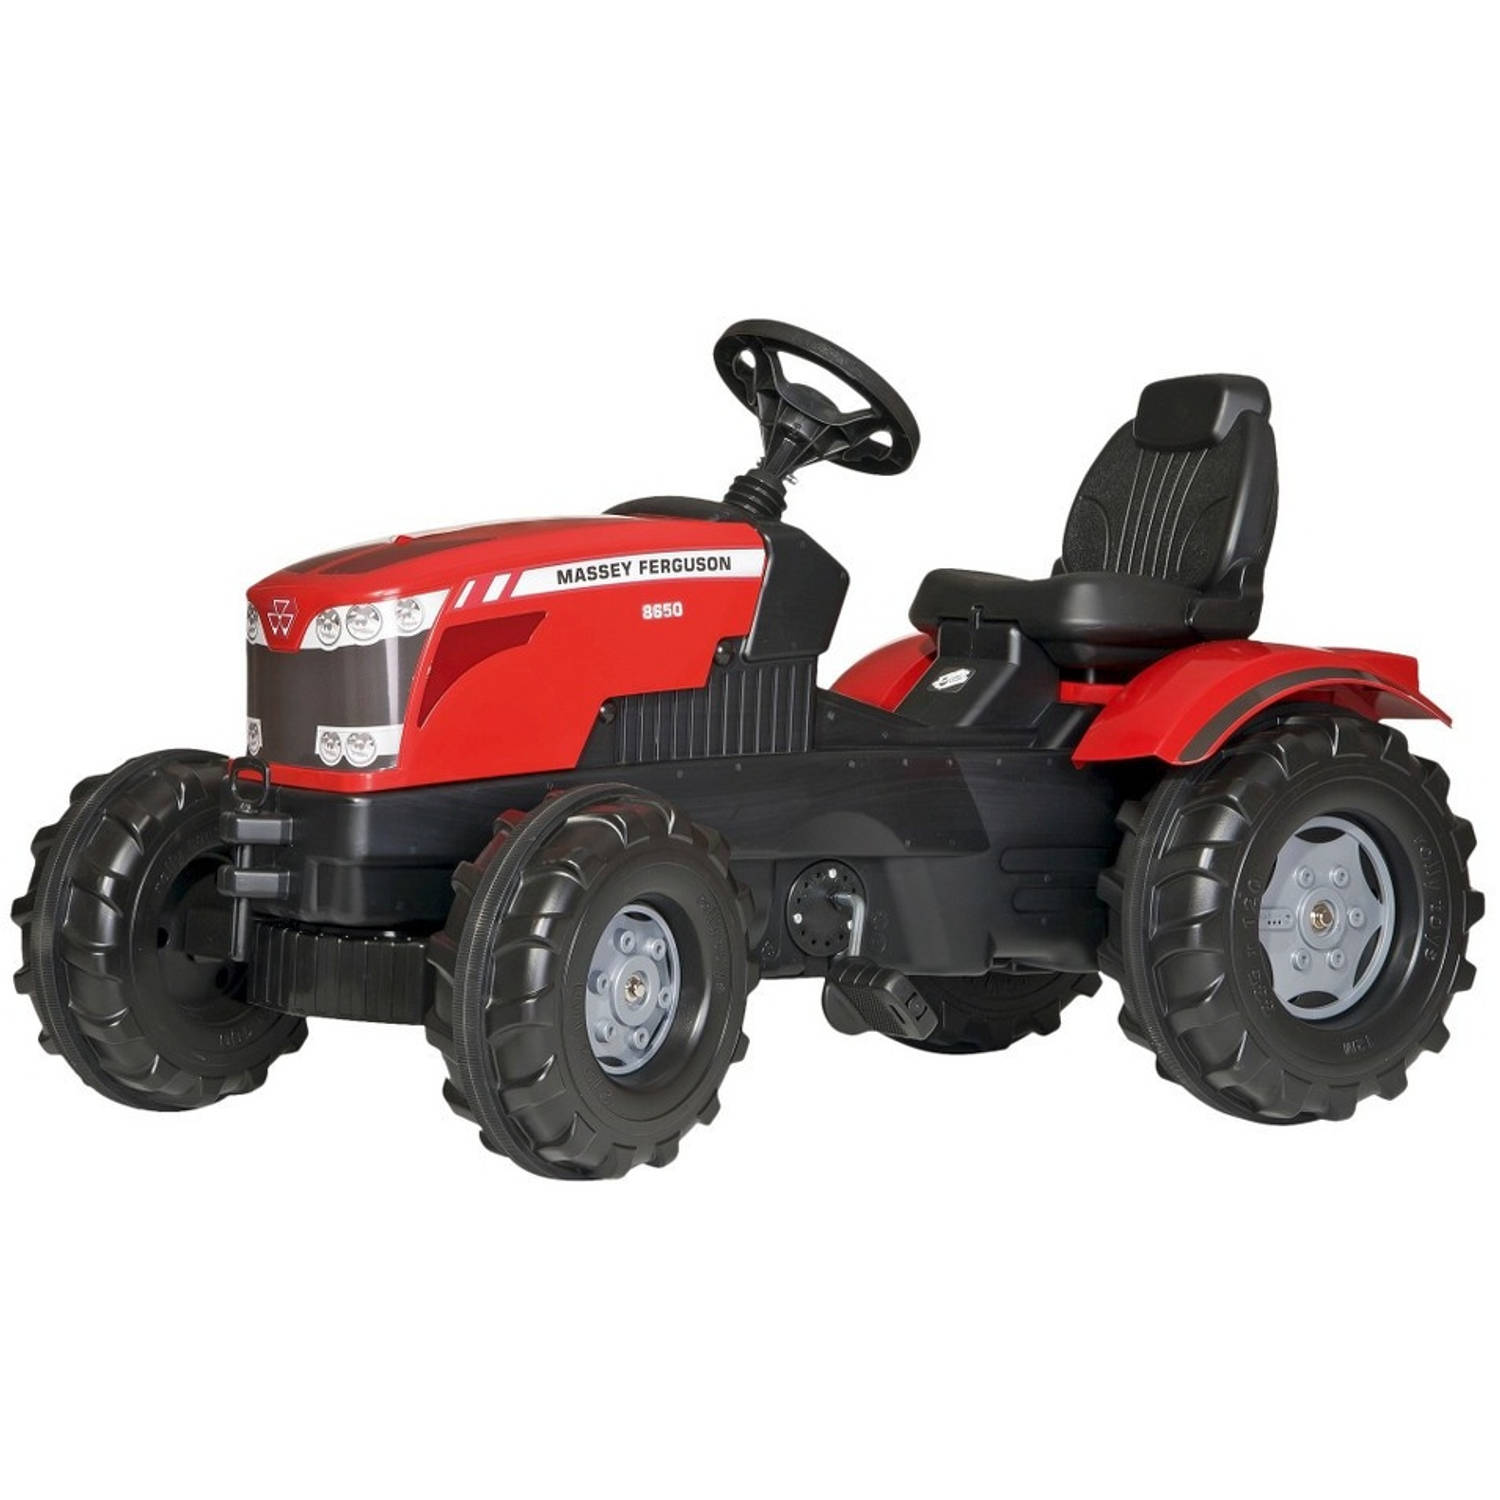 Rolly Toys 601158 RollyFarmtrac MF8650 Tractor